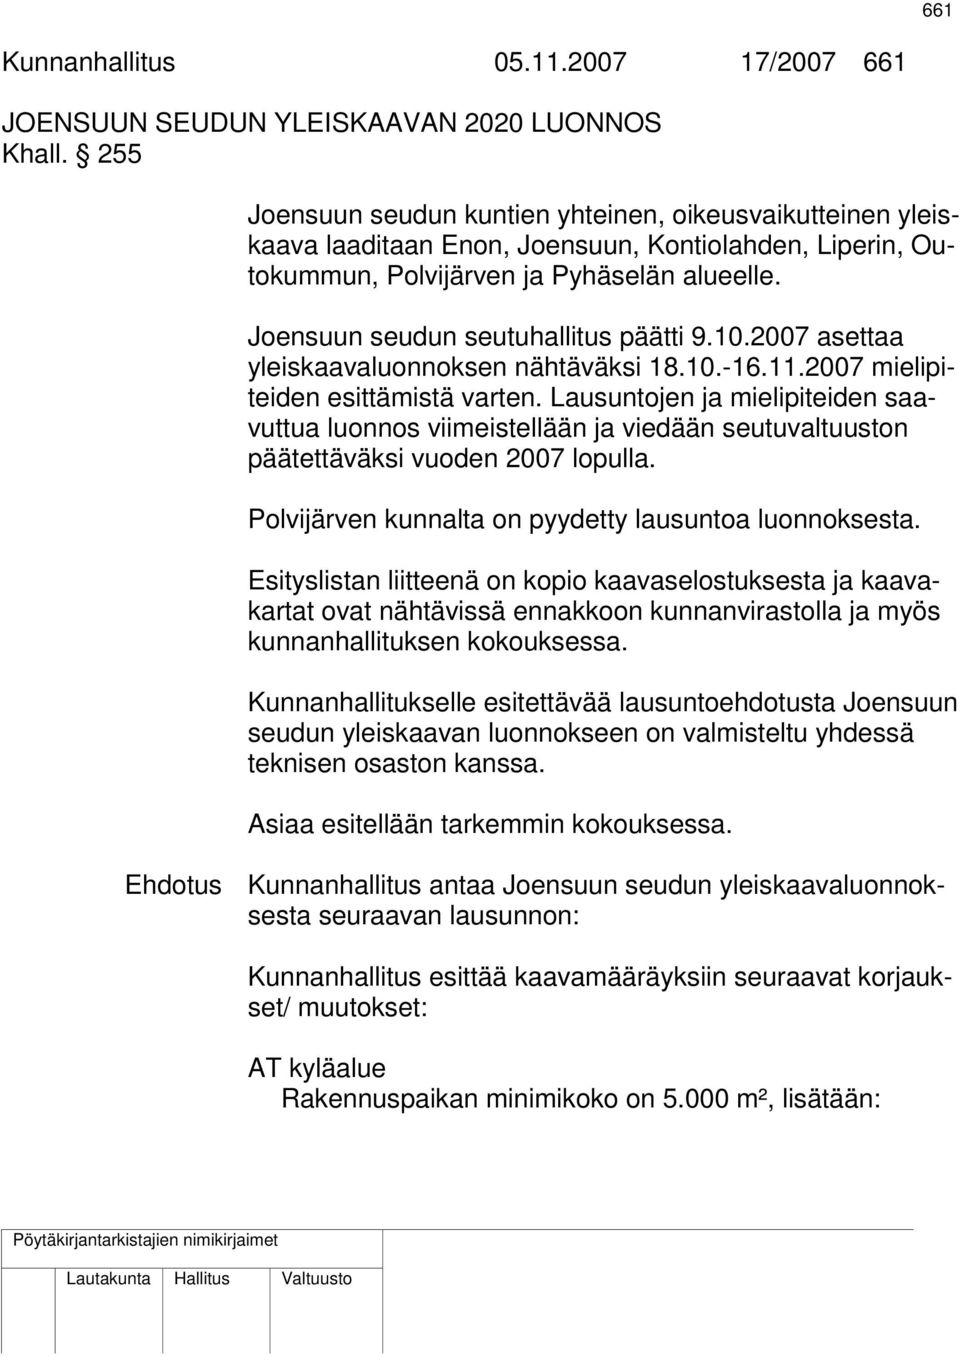 Joensuun seudun seutuhallitus päätti 9.10.2007 asettaa yleiskaavaluonnoksen nähtäväksi 18.10.-16.11.2007 mielipiteiden esittämistä varten.